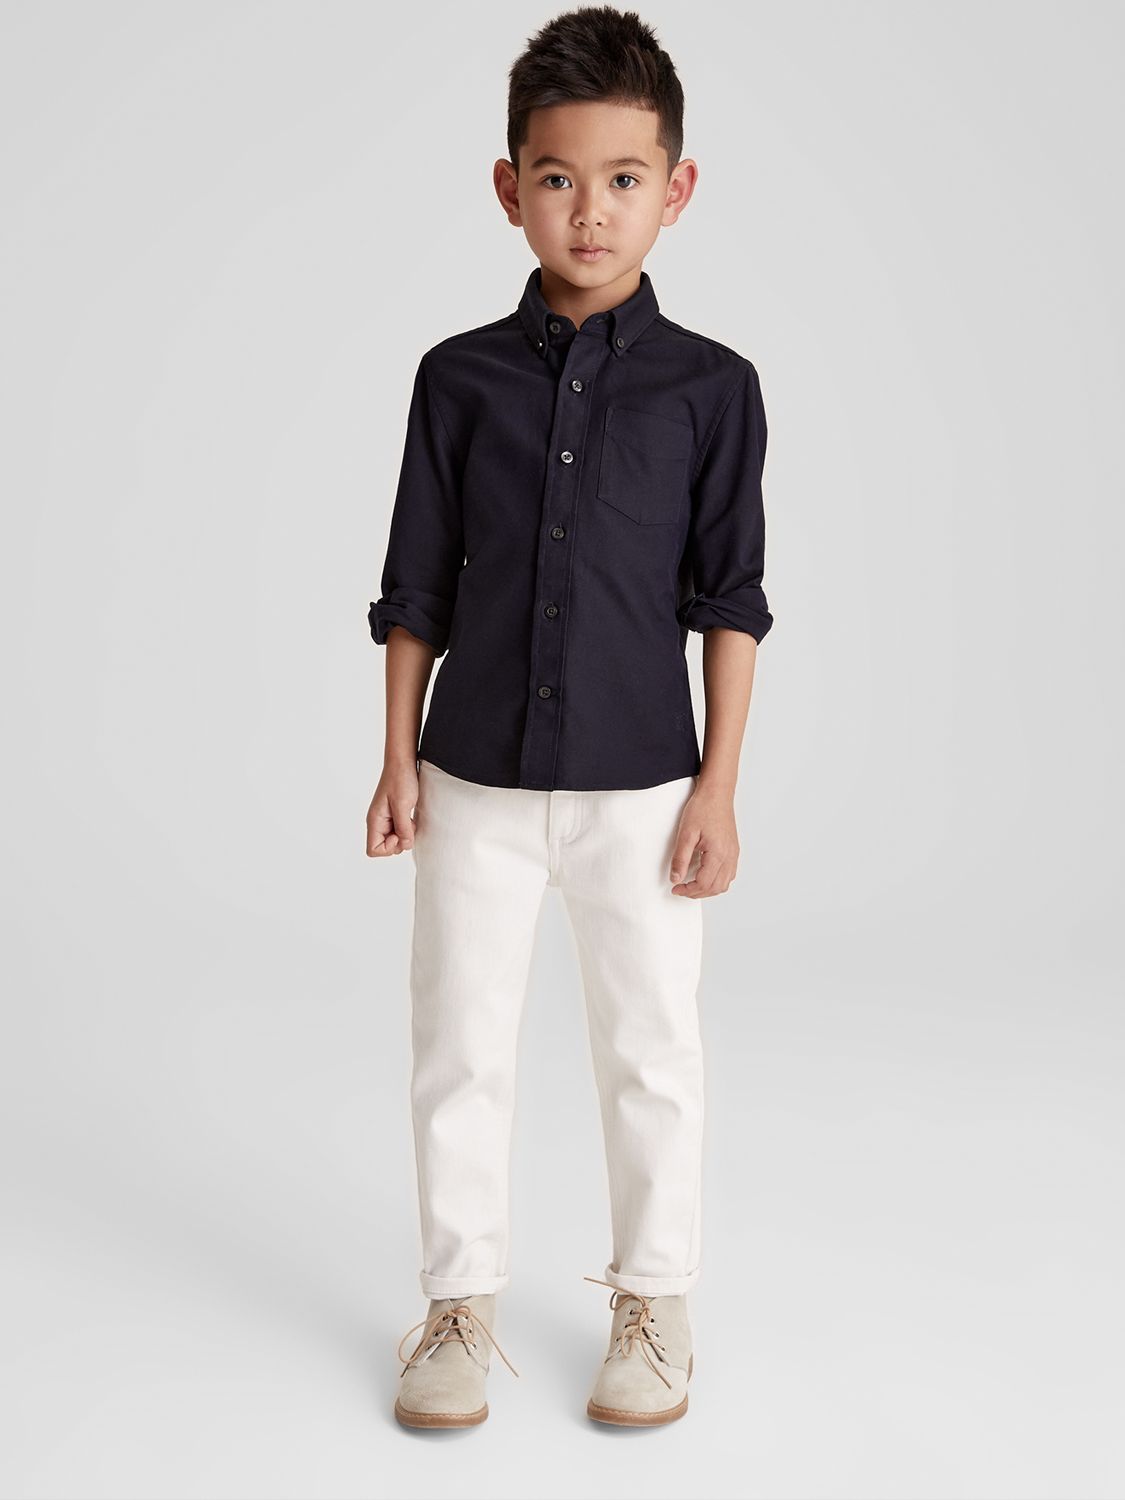 Reiss Kids' Greenwich Junior Shirt, Navy, 4-5 years